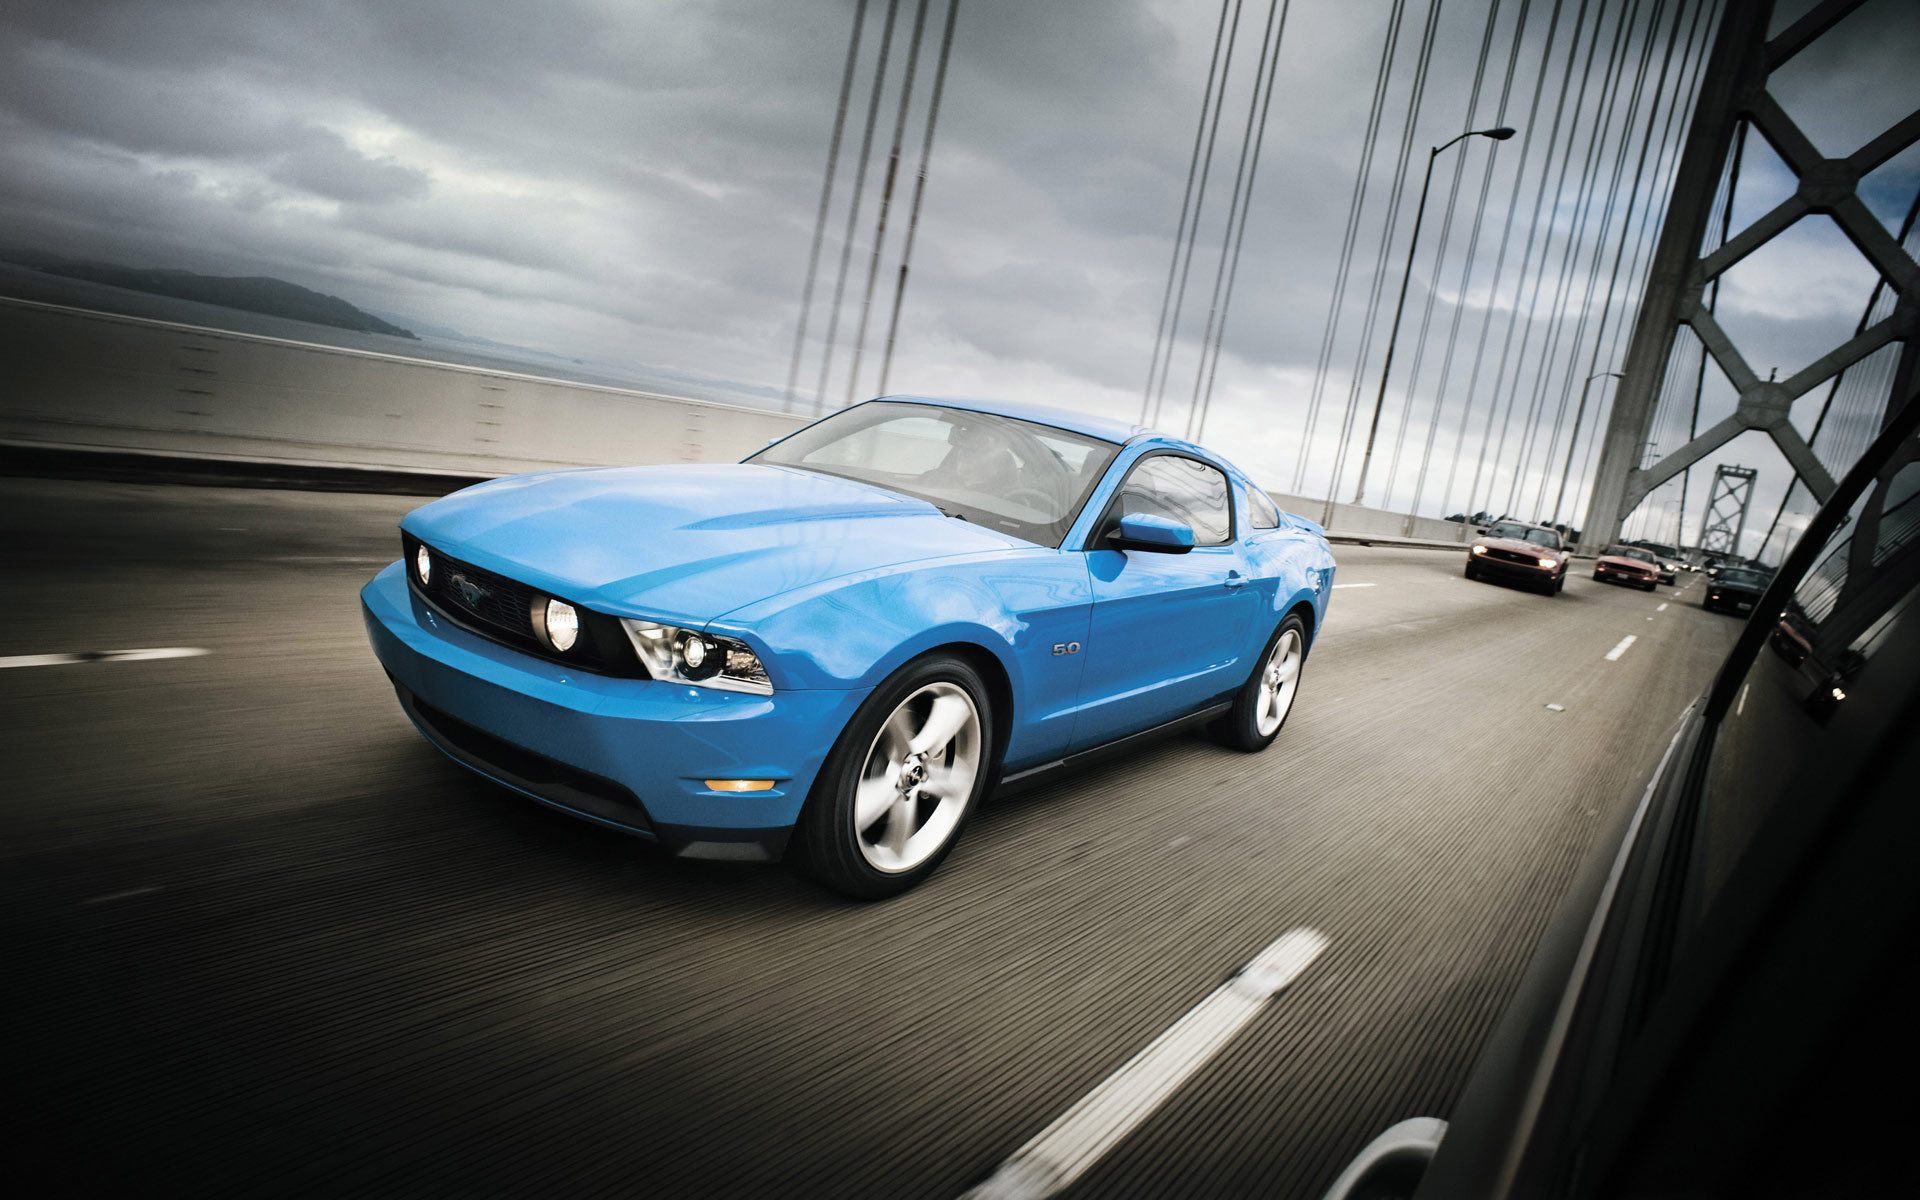 Mustang, Ford, muscle car, мост обои, картинки, фото